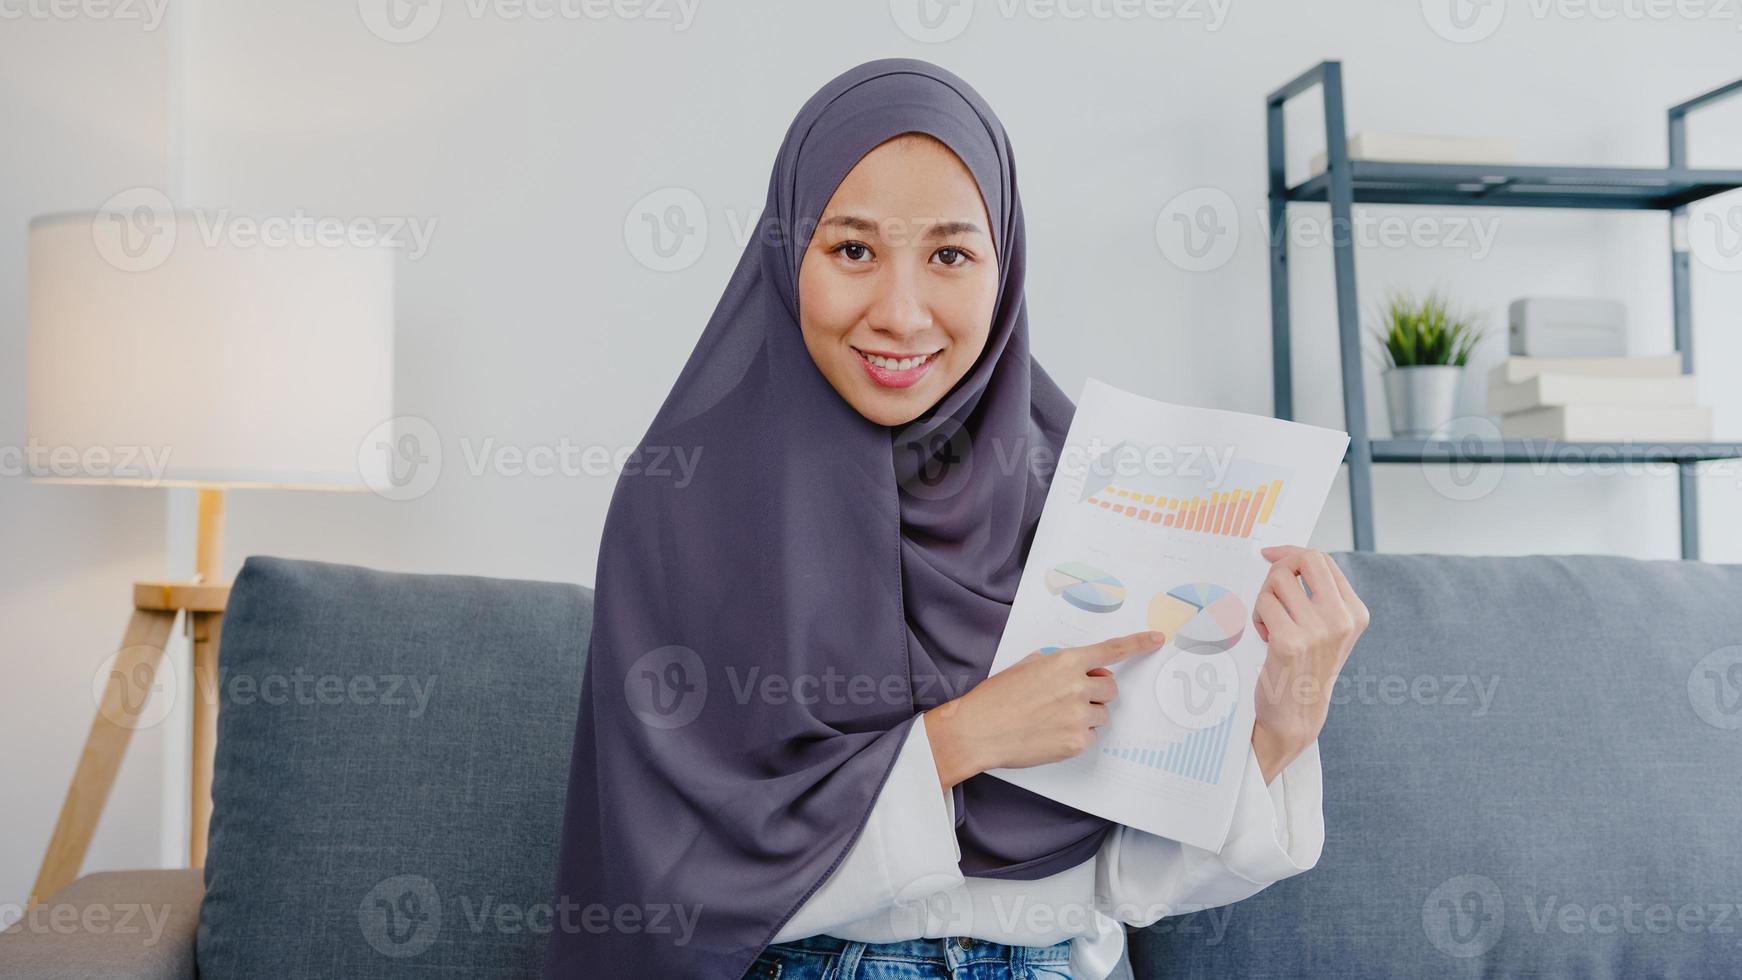 asien muslimsk dam bär hijab använder dator bärbar dator prata med kollegor om försäljningsrapport i videosamtalsmöte medan du arbetar på distans hemifrån i vardagsrummet. social distansering, karantän för corona. foto